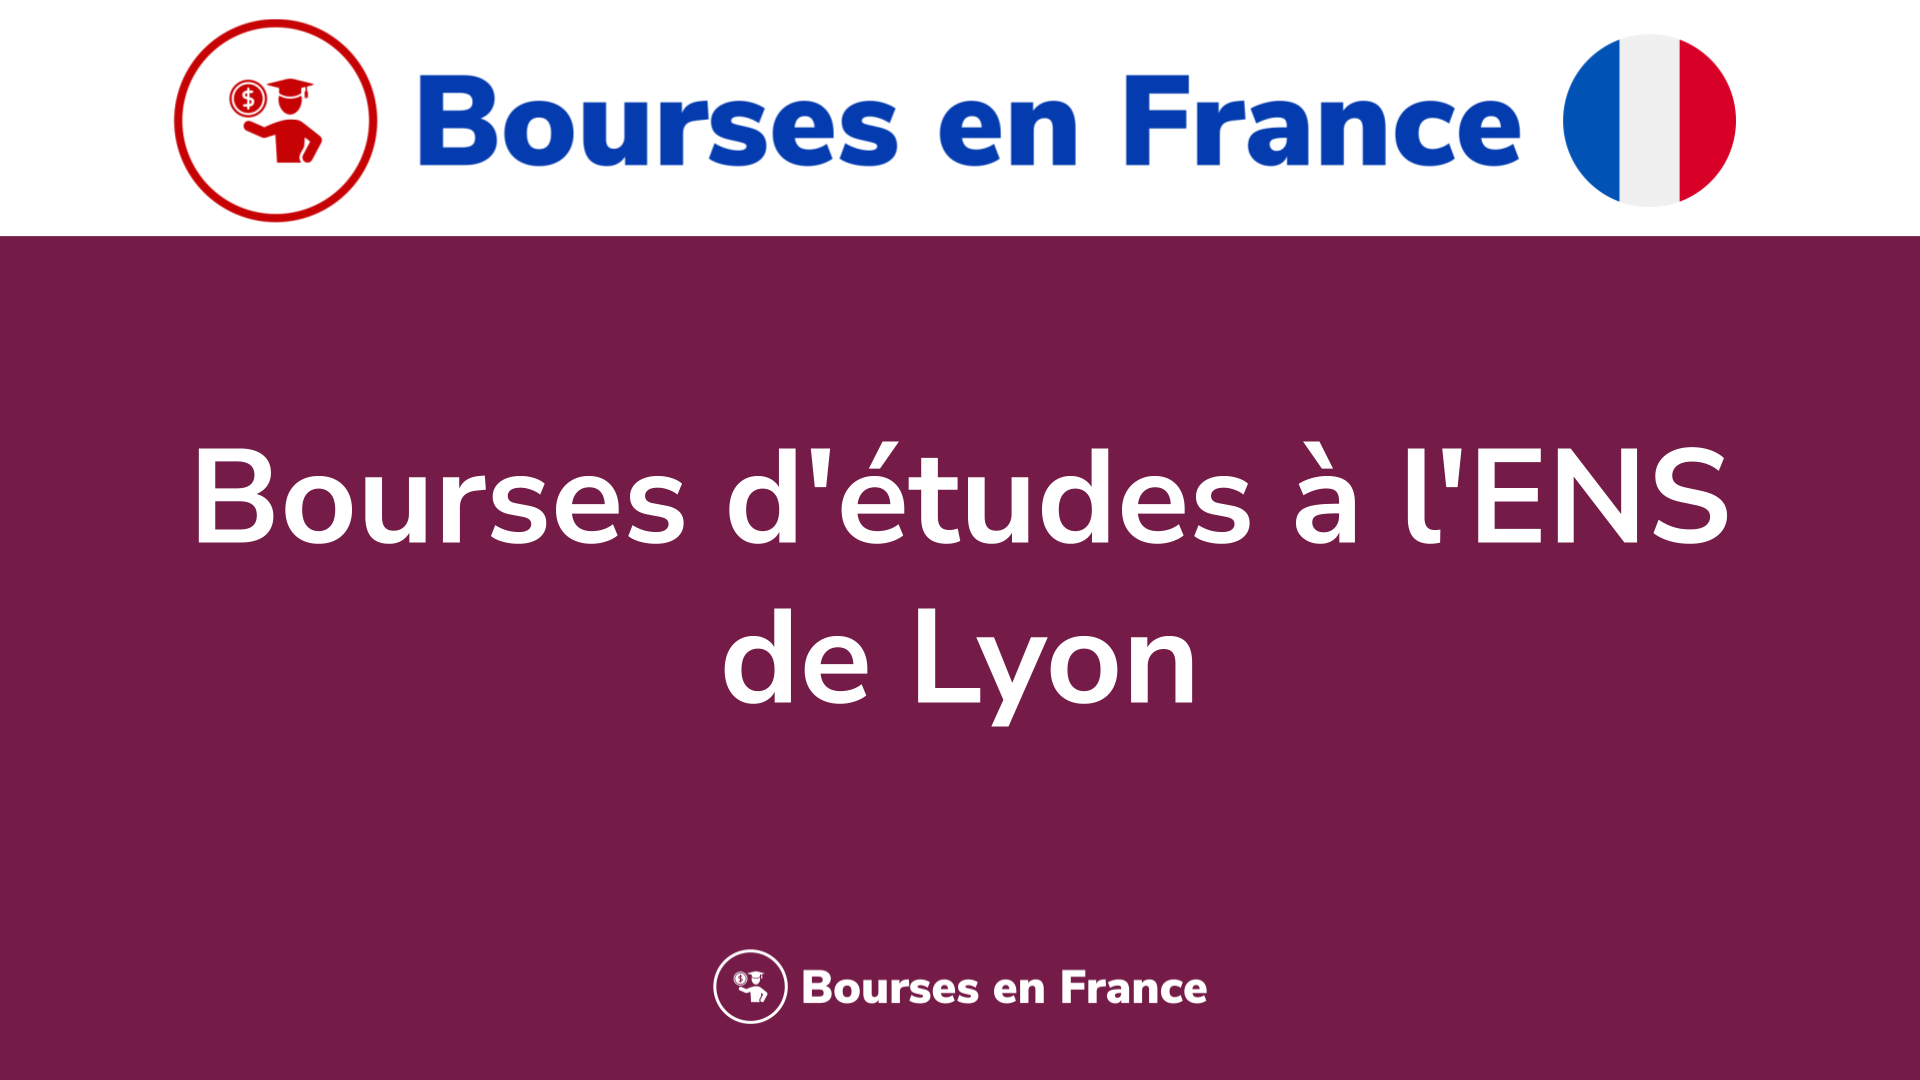 Bourses d'études à l'ENS de Lyon